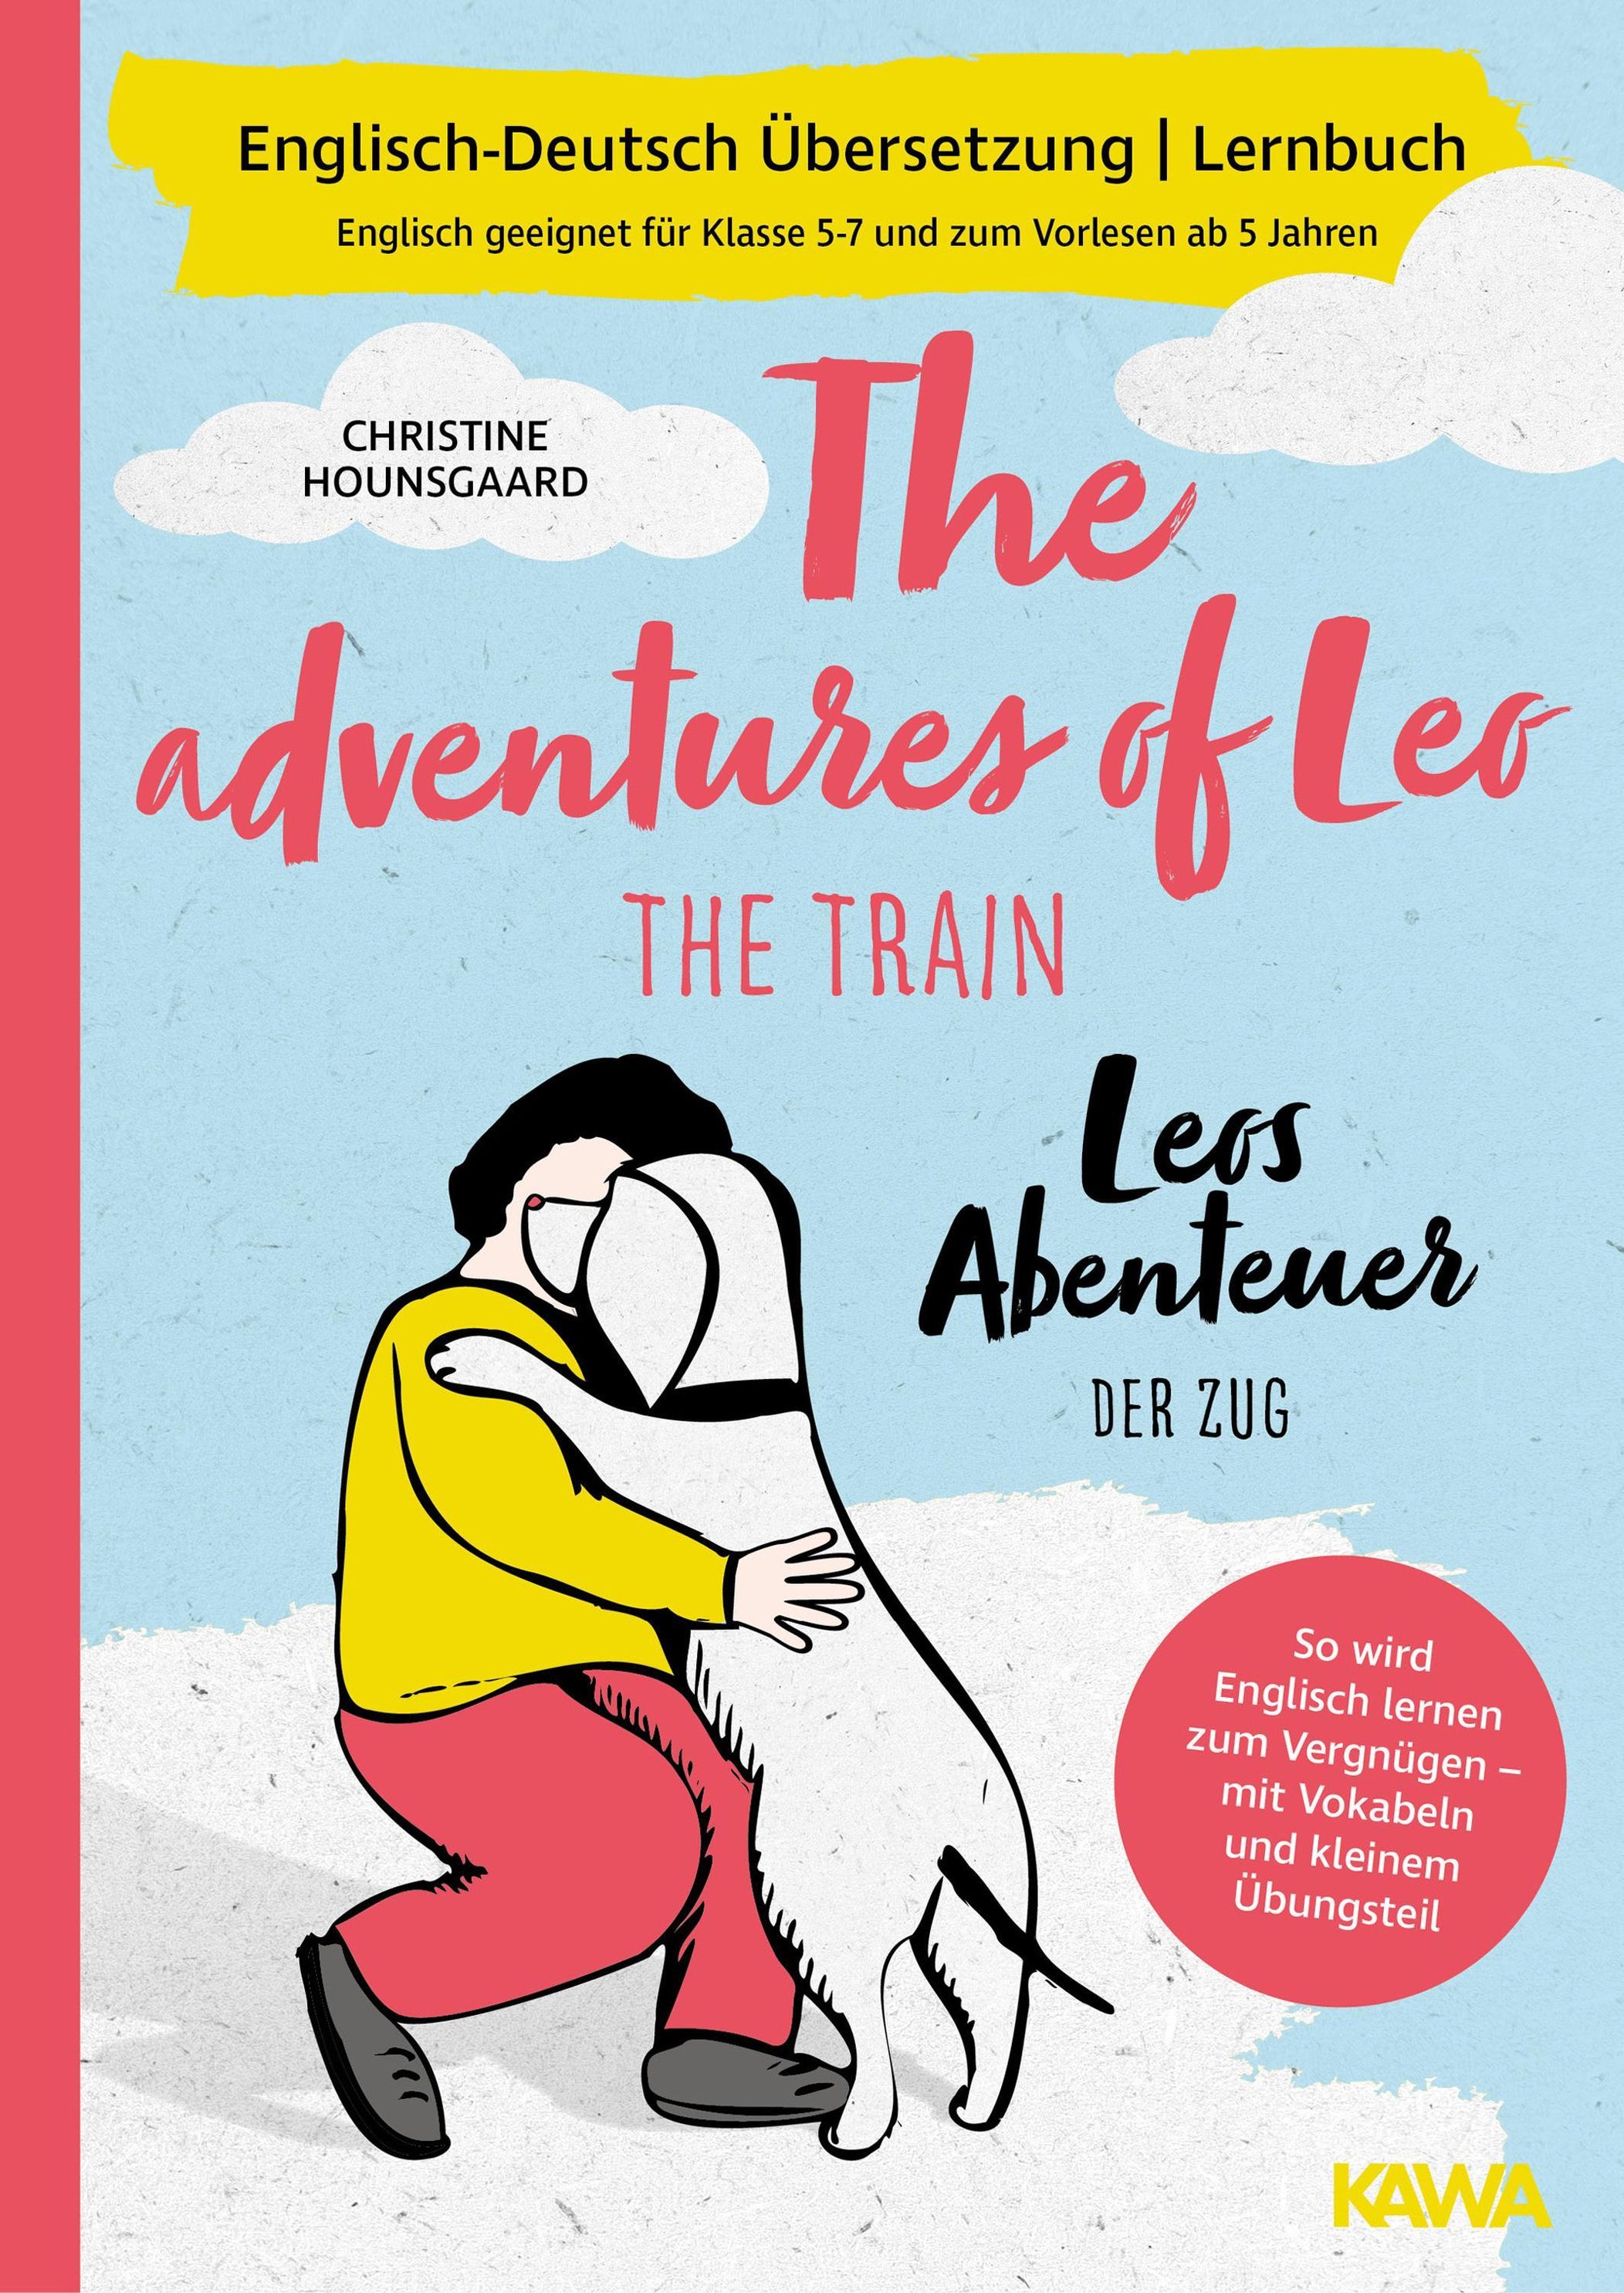 Leos Abenteuer - der Zug The adventures of Leo - the train Englisch-Deutsch  Übersetzung Lernbuch eBook v. Christine Hounsgaard | Weltbild